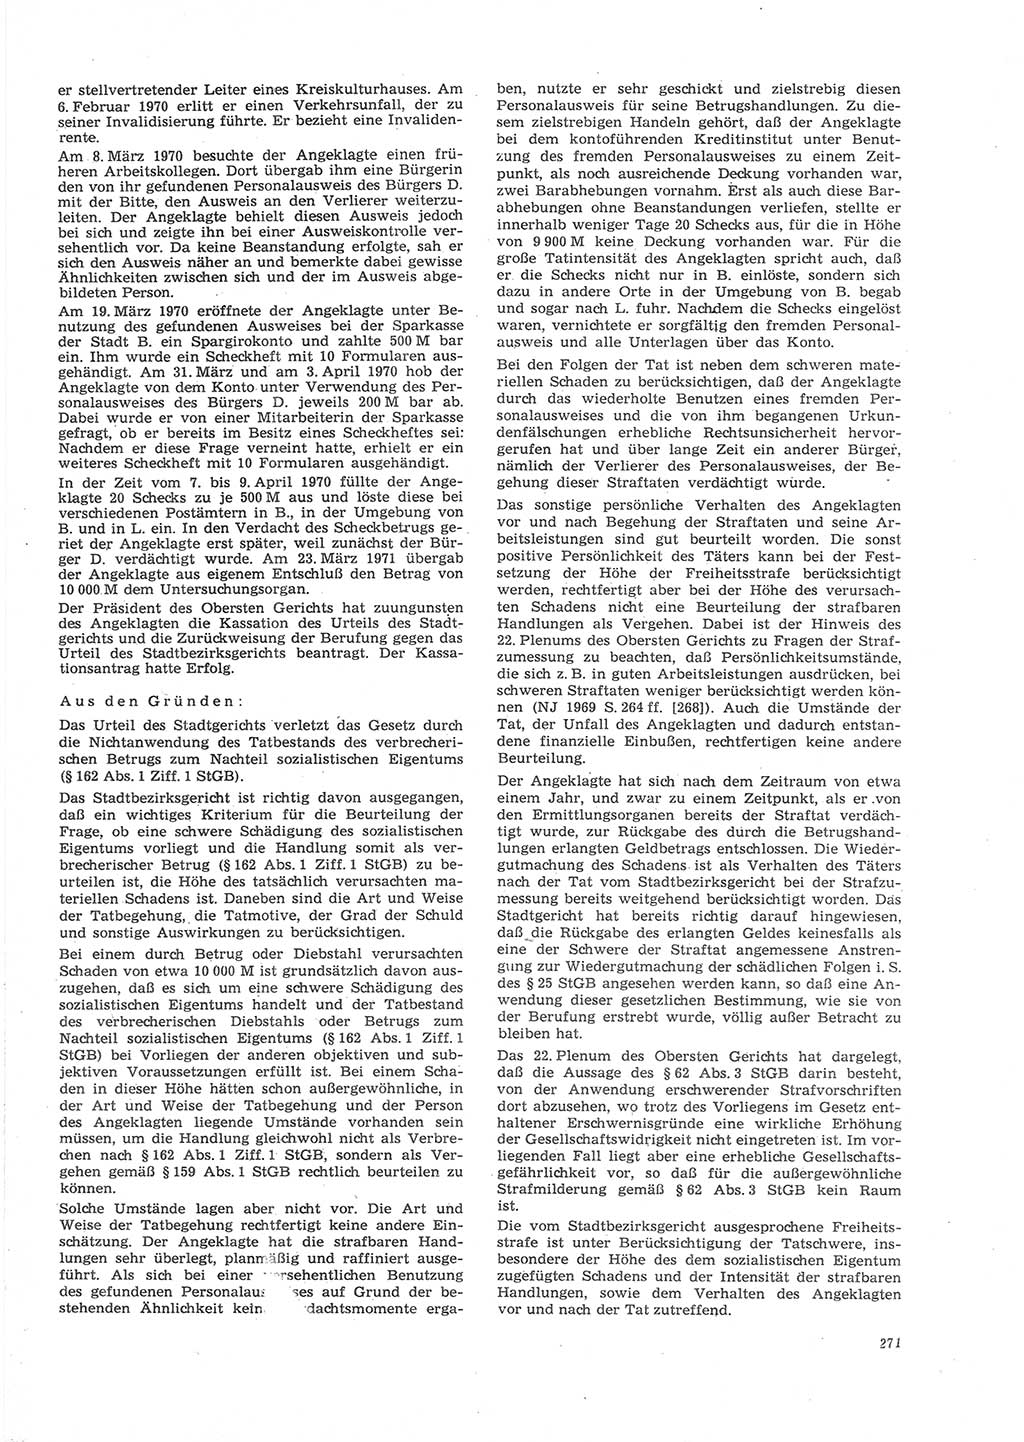 Neue Justiz (NJ), Zeitschrift für Recht und Rechtswissenschaft [Deutsche Demokratische Republik (DDR)], 26. Jahrgang 1972, Seite 271 (NJ DDR 1972, S. 271)